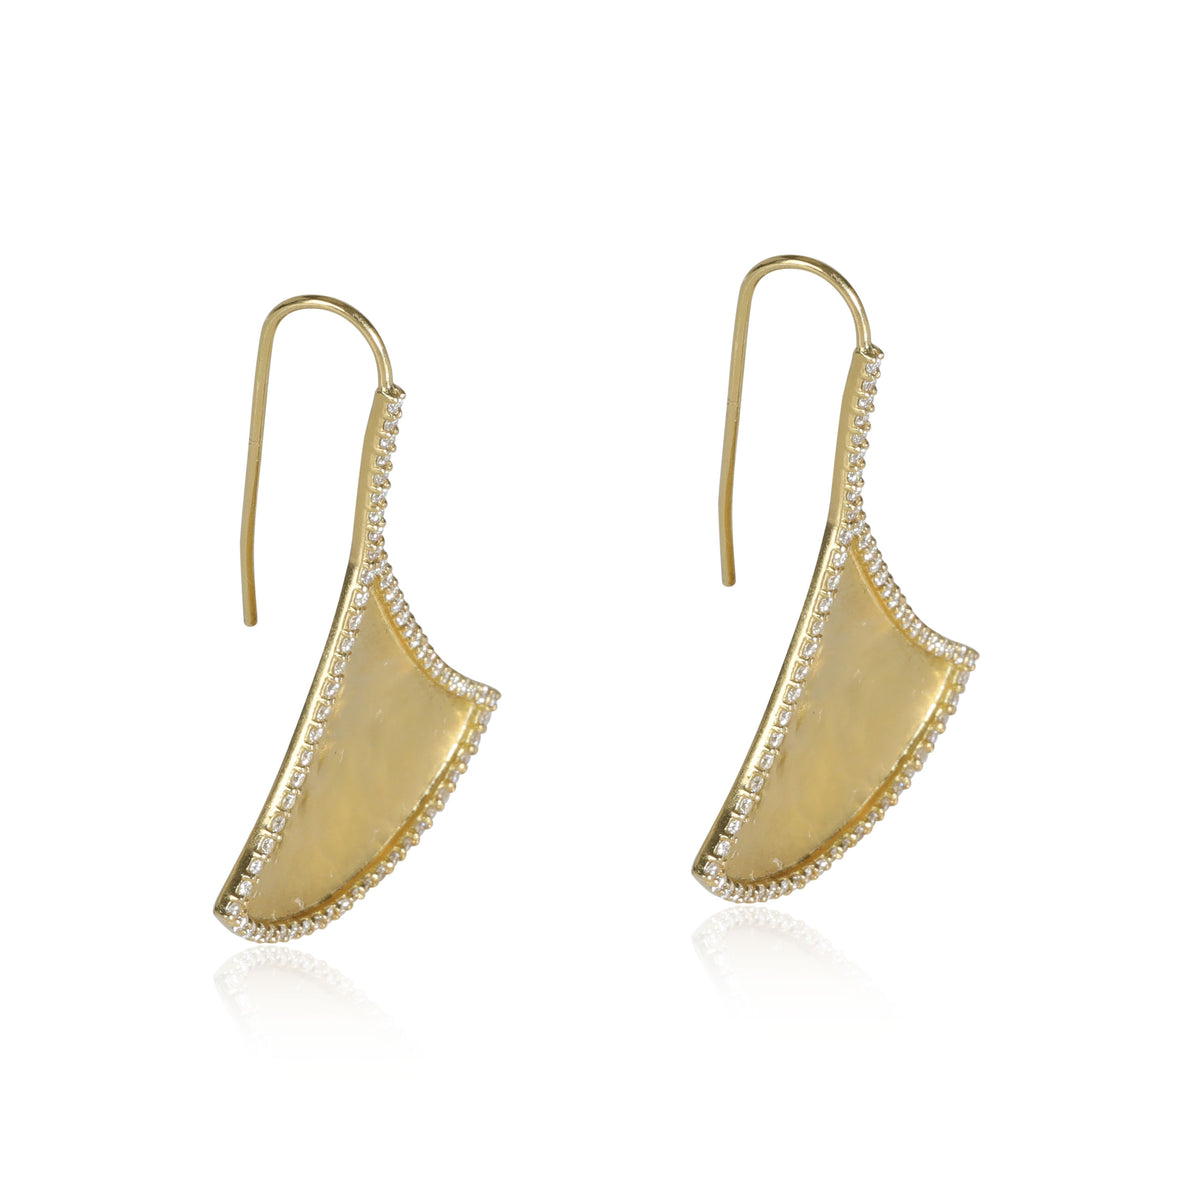 Amrapali Kimaya Diamond Fan Earrings in 18K Yellow Gold (1.09 ctw)